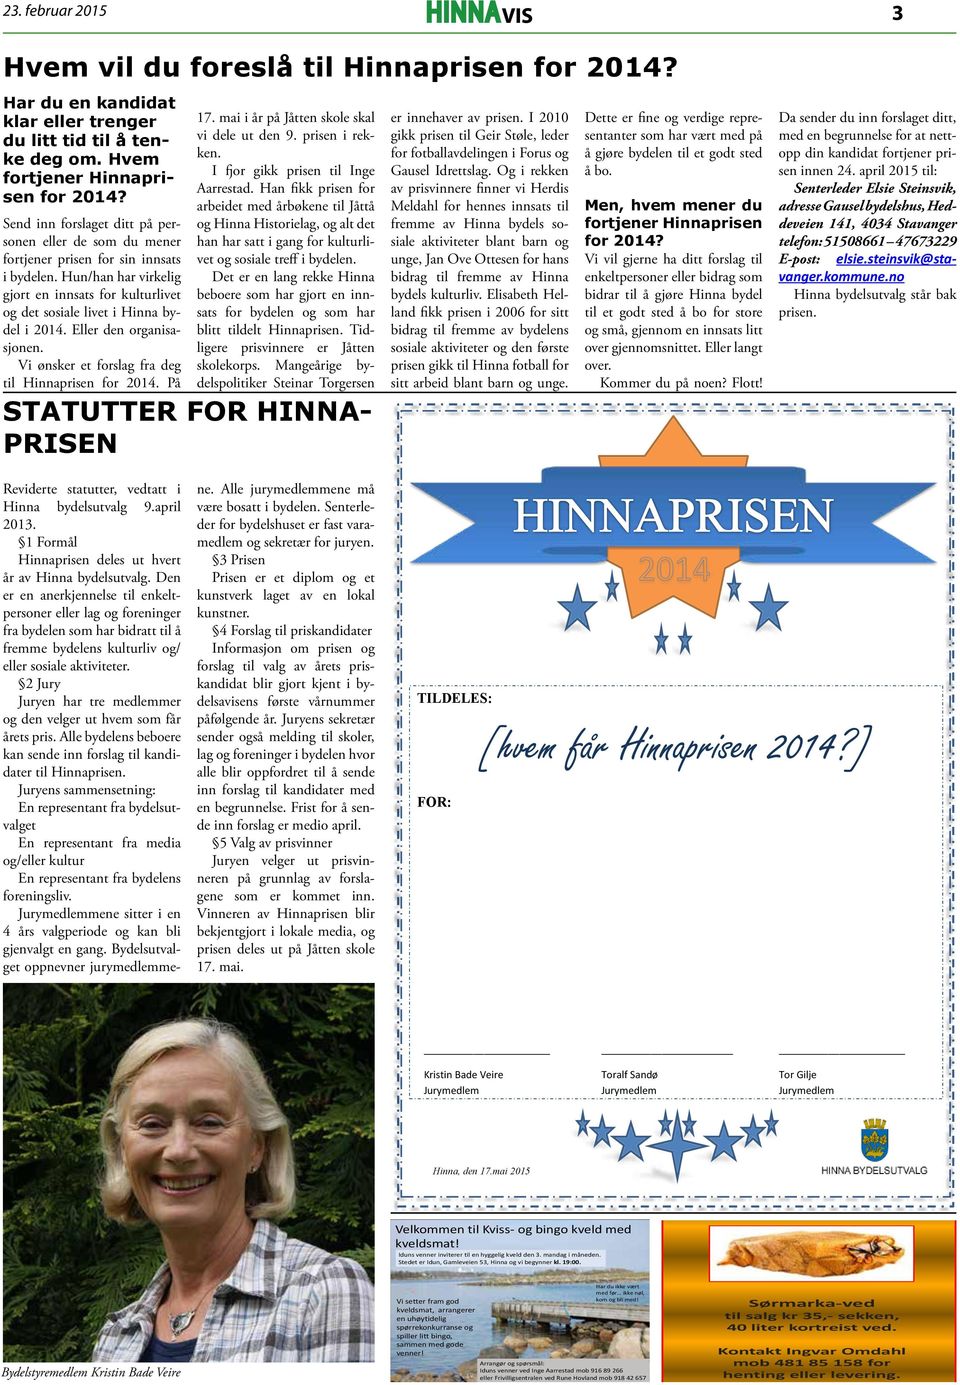 Eller den organisasjonen. Vi ønsker et forslag fra deg til Hinnaprisen for 2014. På 17. mai i år på Jåtten skole skal vi dele ut den 9. prisen i rekken. I fjor gikk prisen til Inge Aarrestad.